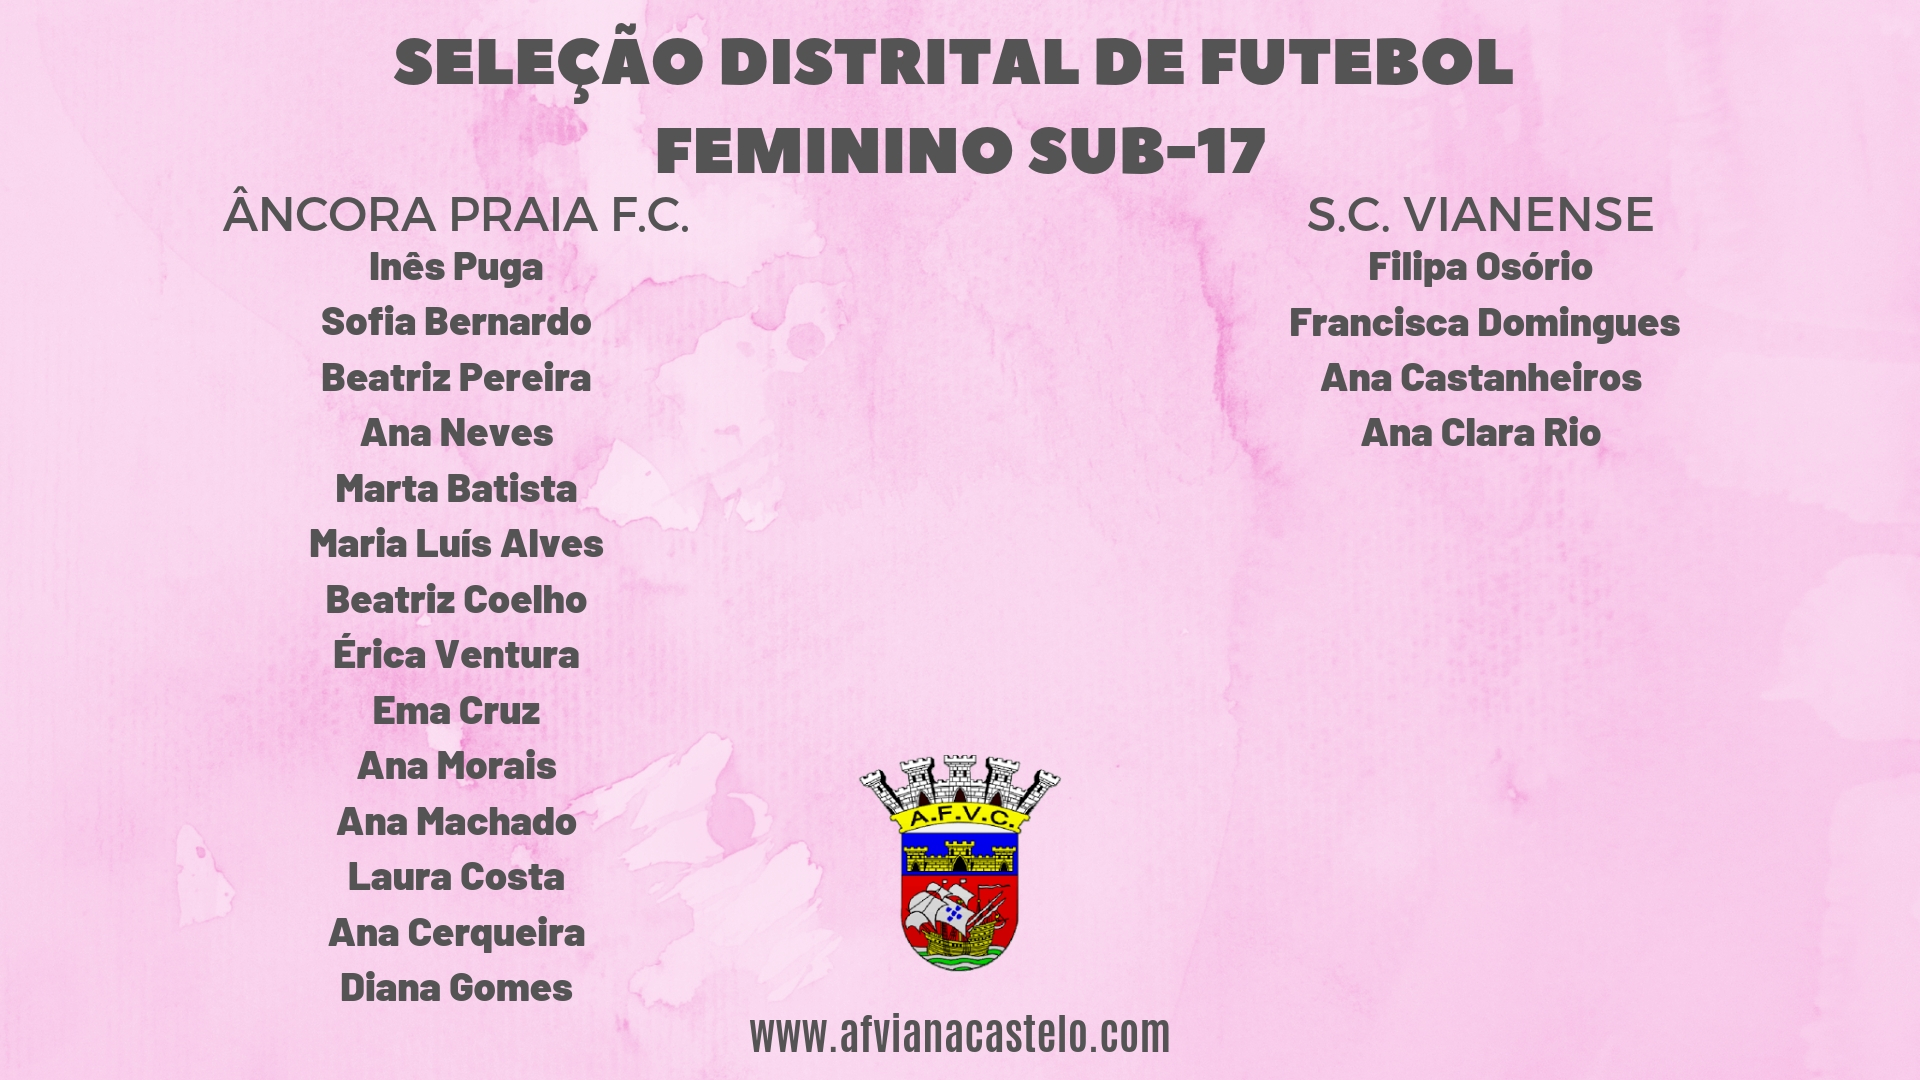 Seleção Distrital de Futebol Feminino Sub-17